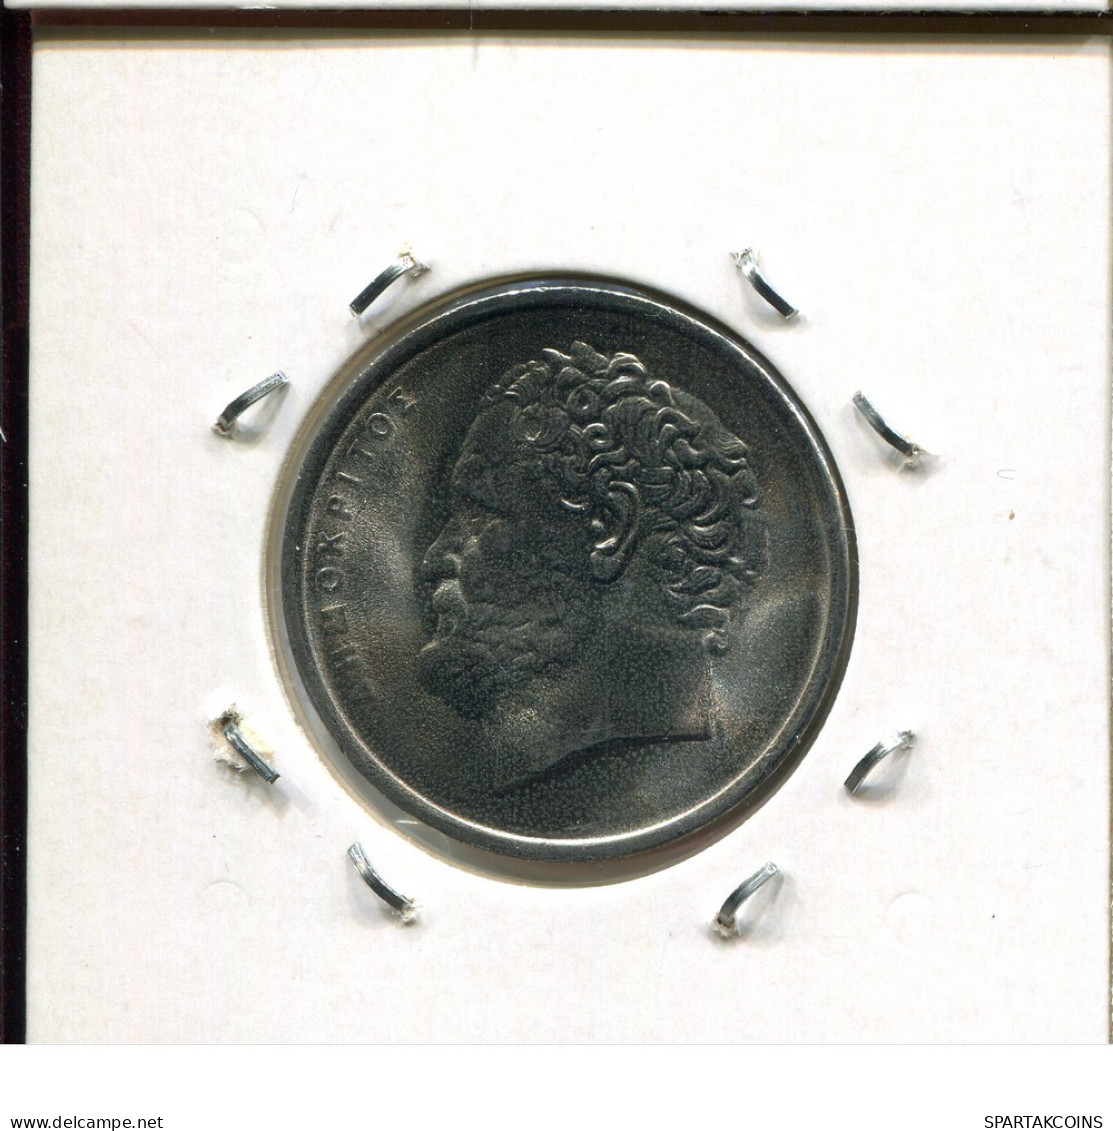 10 DRACHME 1986 GRECIA GREECE Moneda #AR555.E.A - Greece